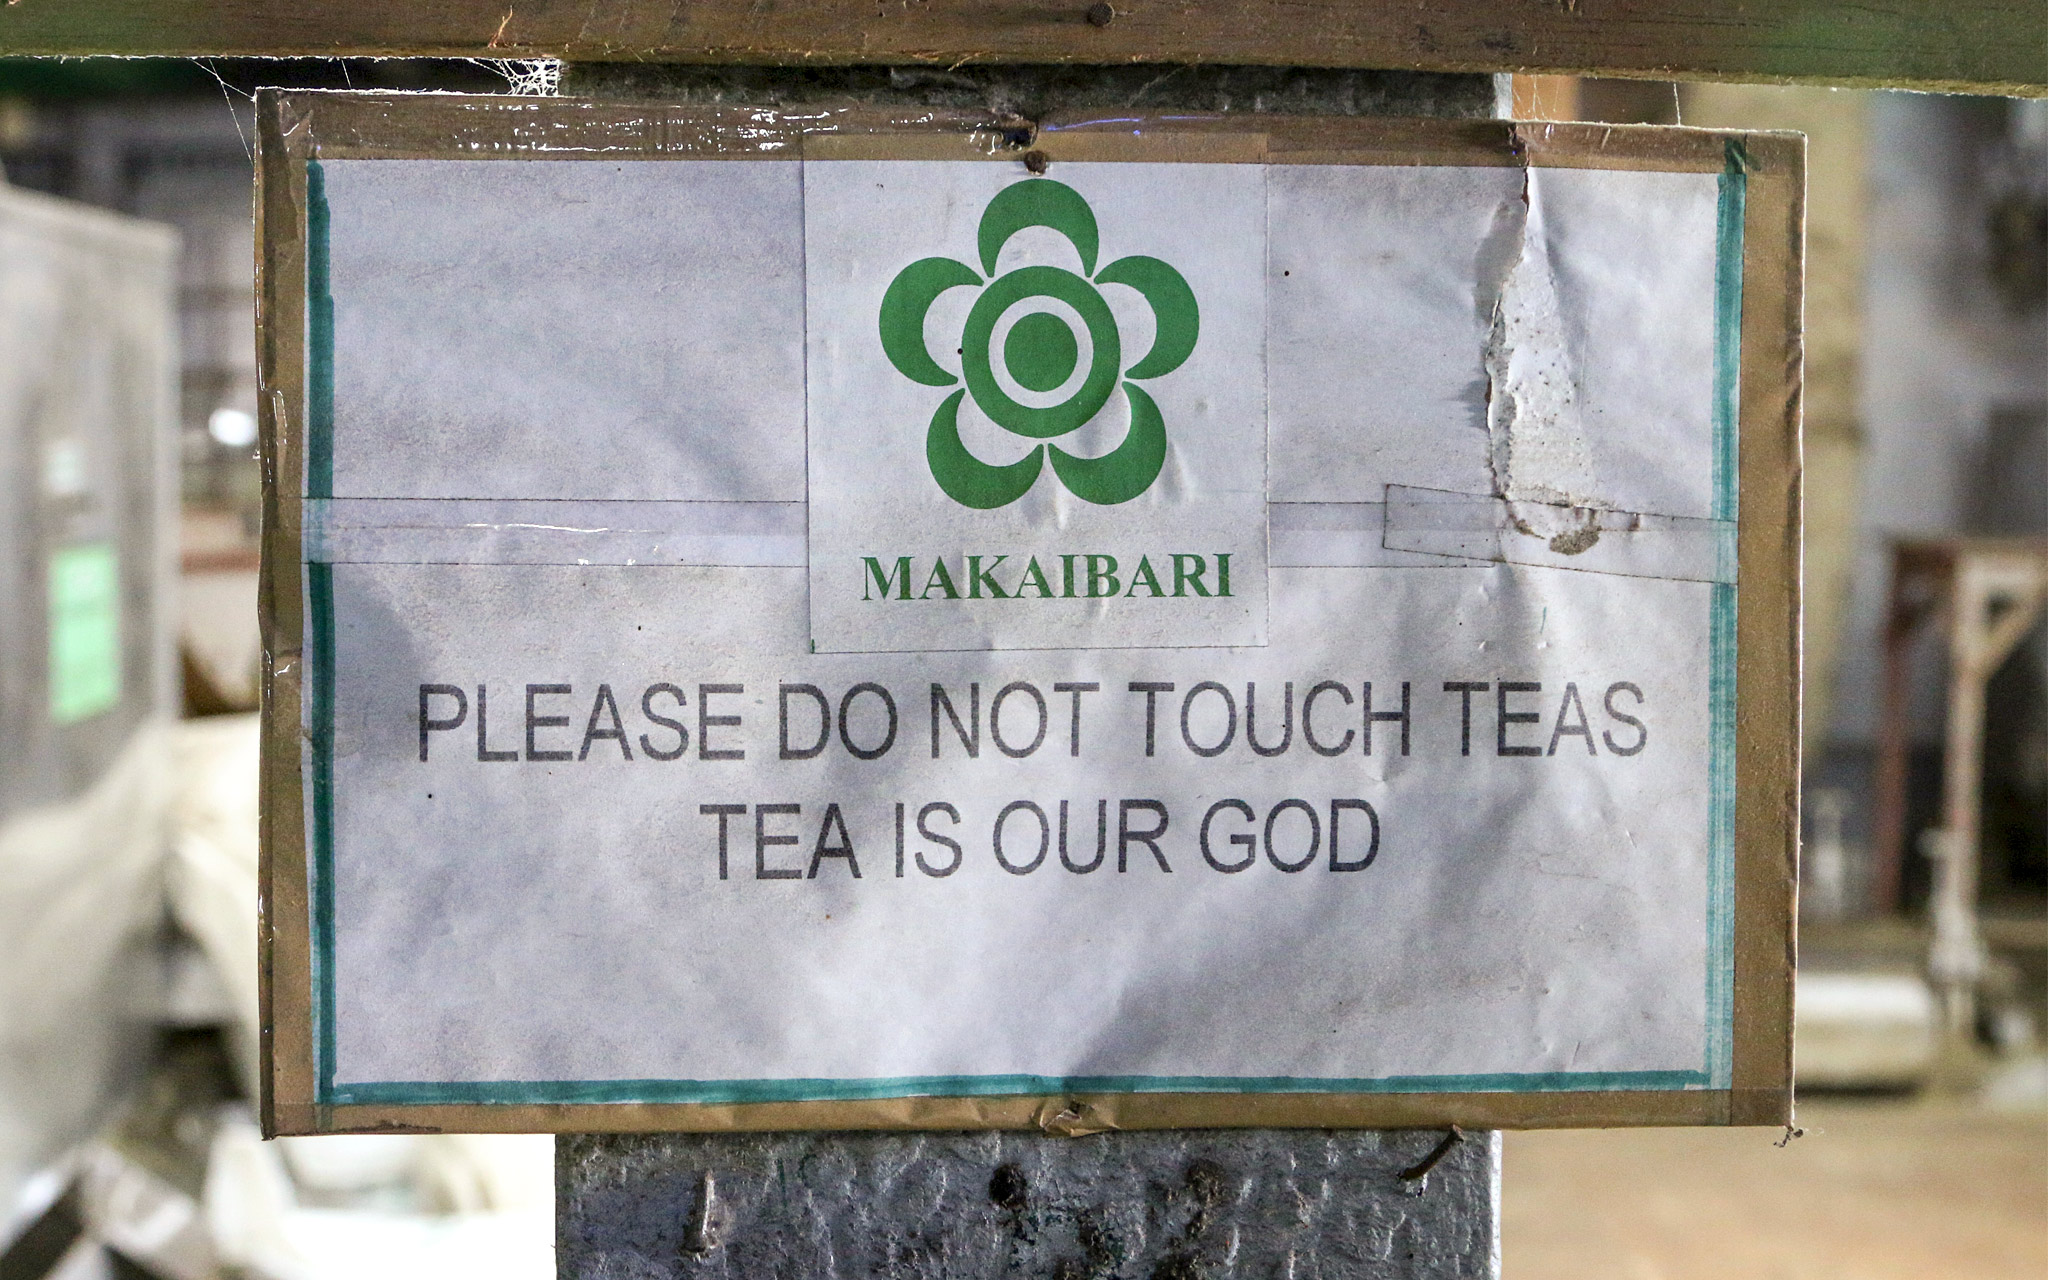 Kyltissä Makaibarin logo ja teksti: "Please do not touch teas. Tea is our god"